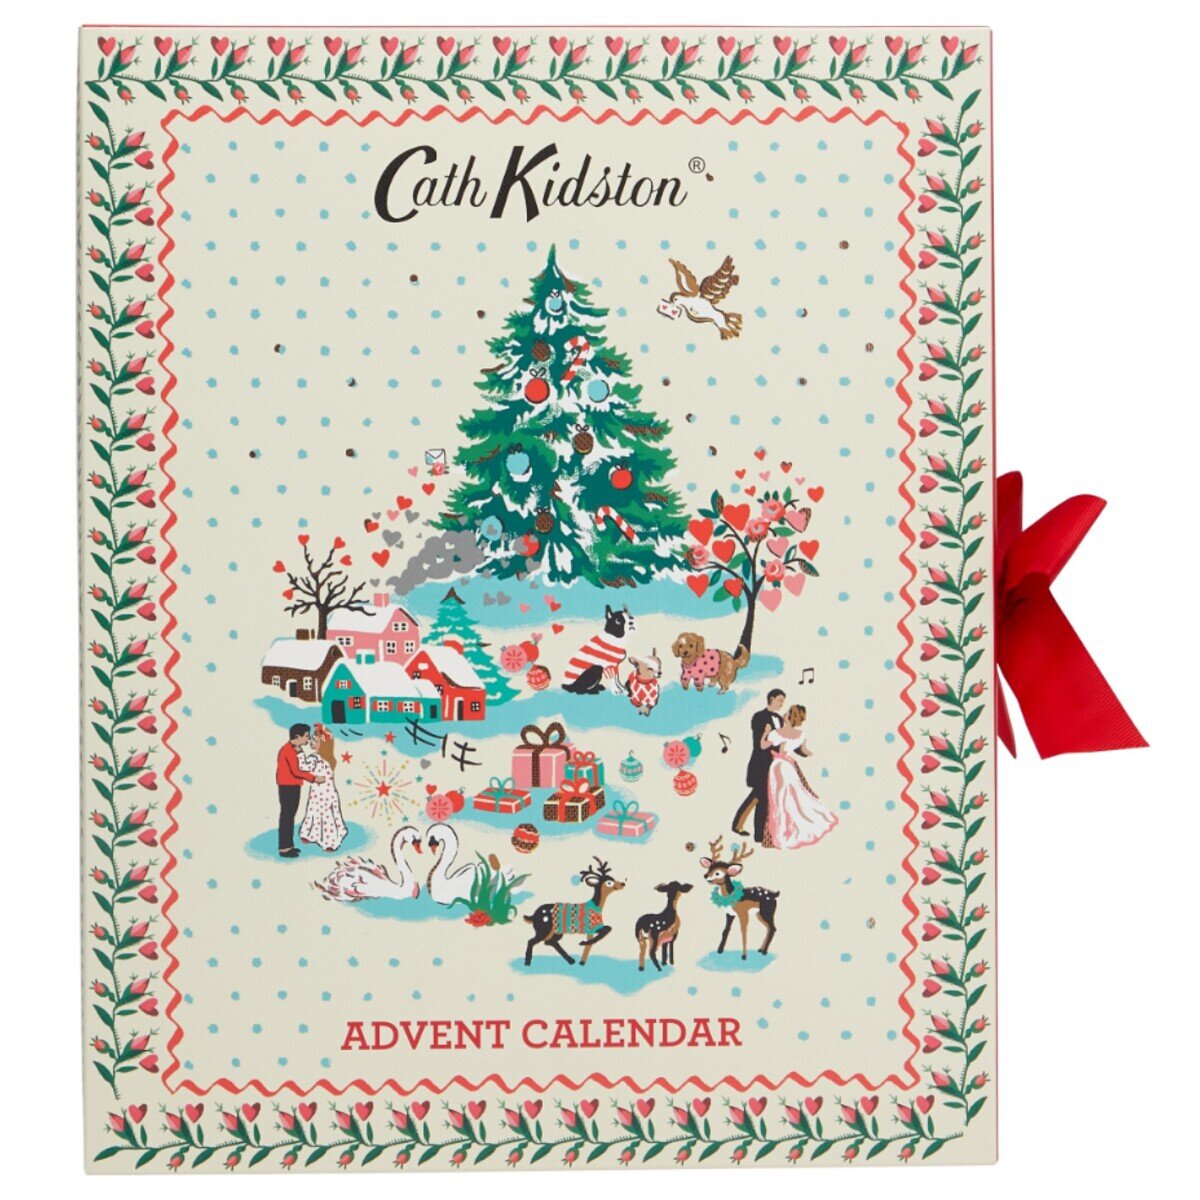 コスメ/美容キャスキッドソン Cath Kidston 21クリスマス　アドベントカレンダー